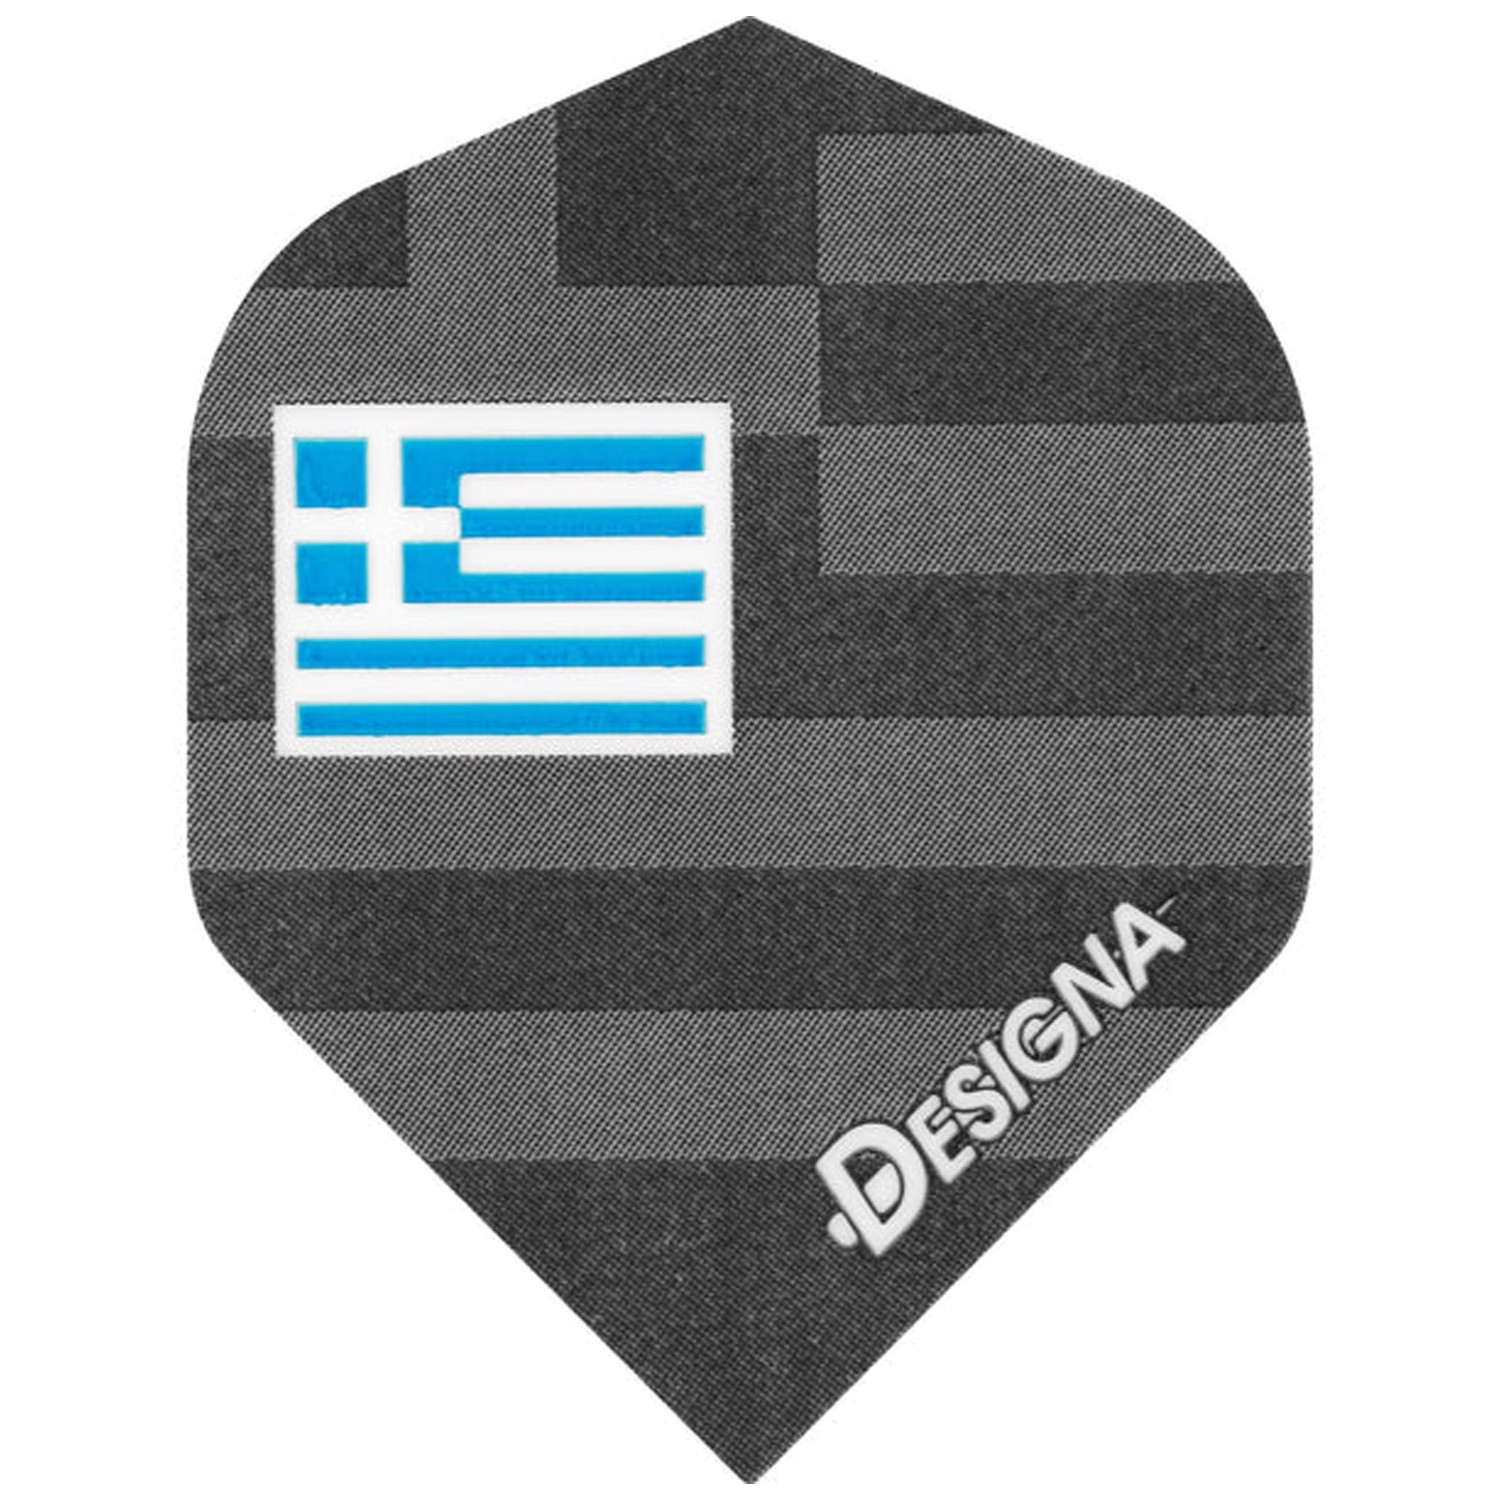 Dartflight Hologram Std. mit Länderfahne Griechenland, Greece, 3 Stück von Designa